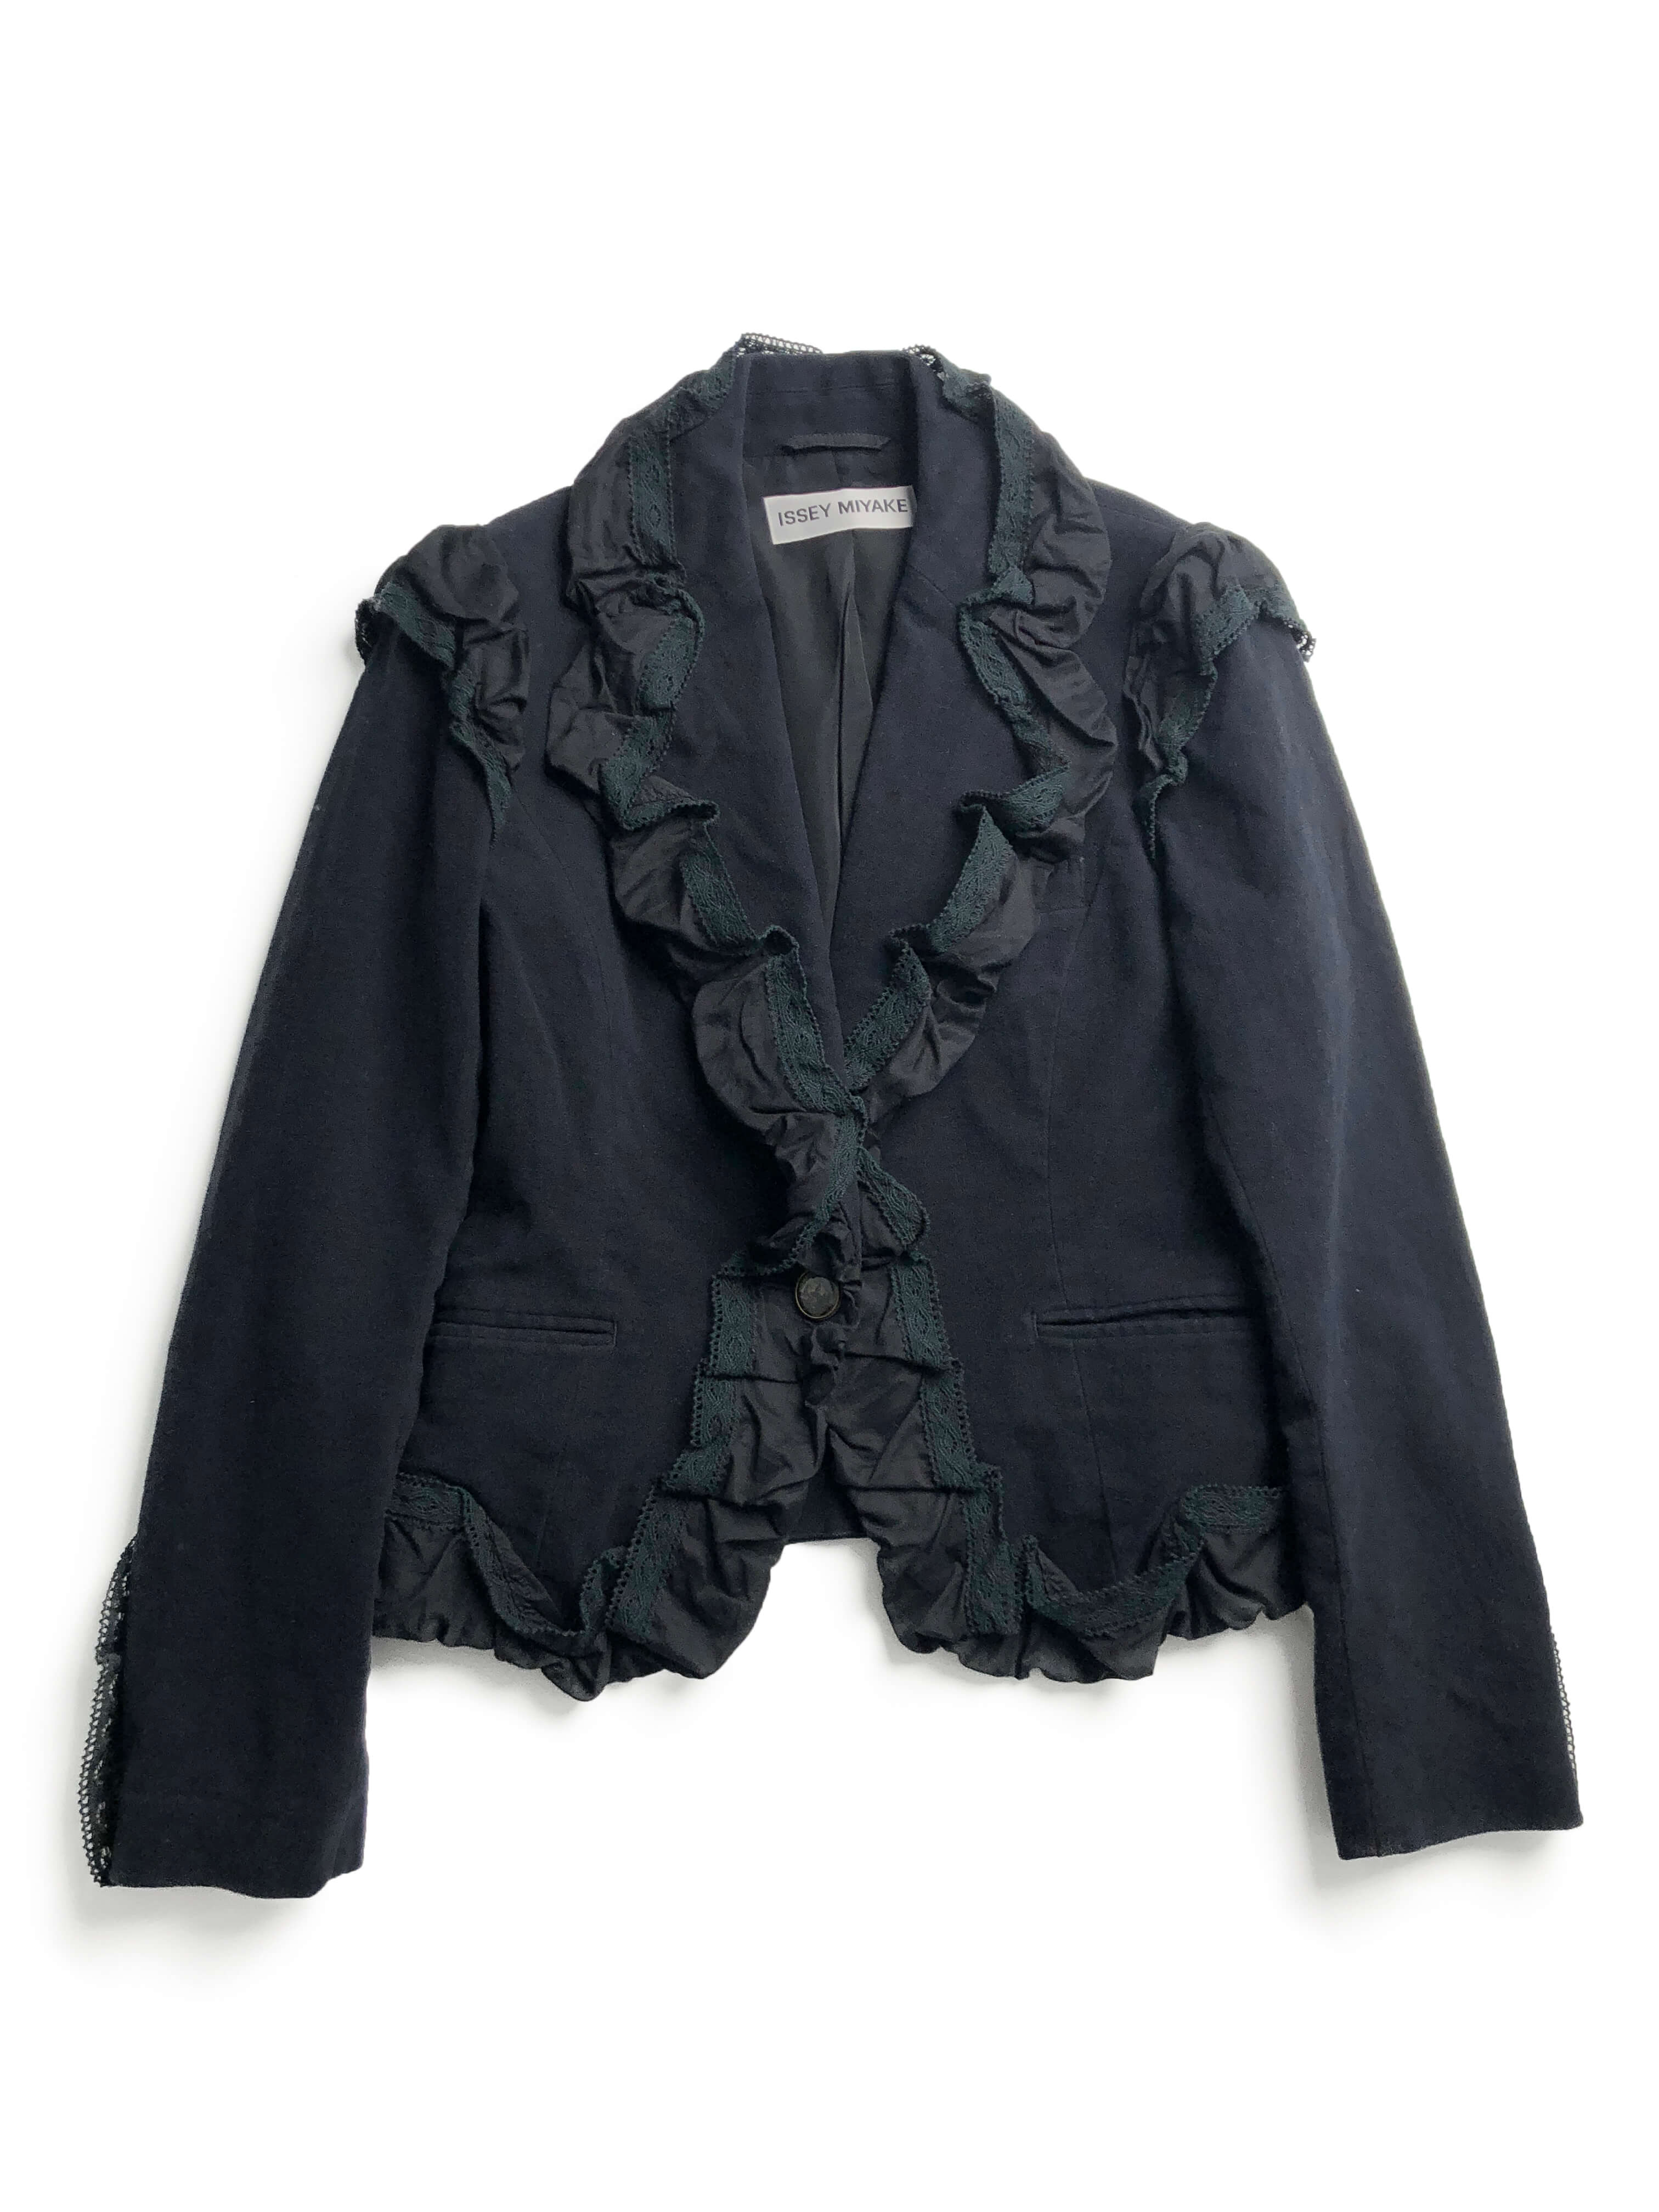 ISSEY MIYAKE 2005aw lace moleskin jacket